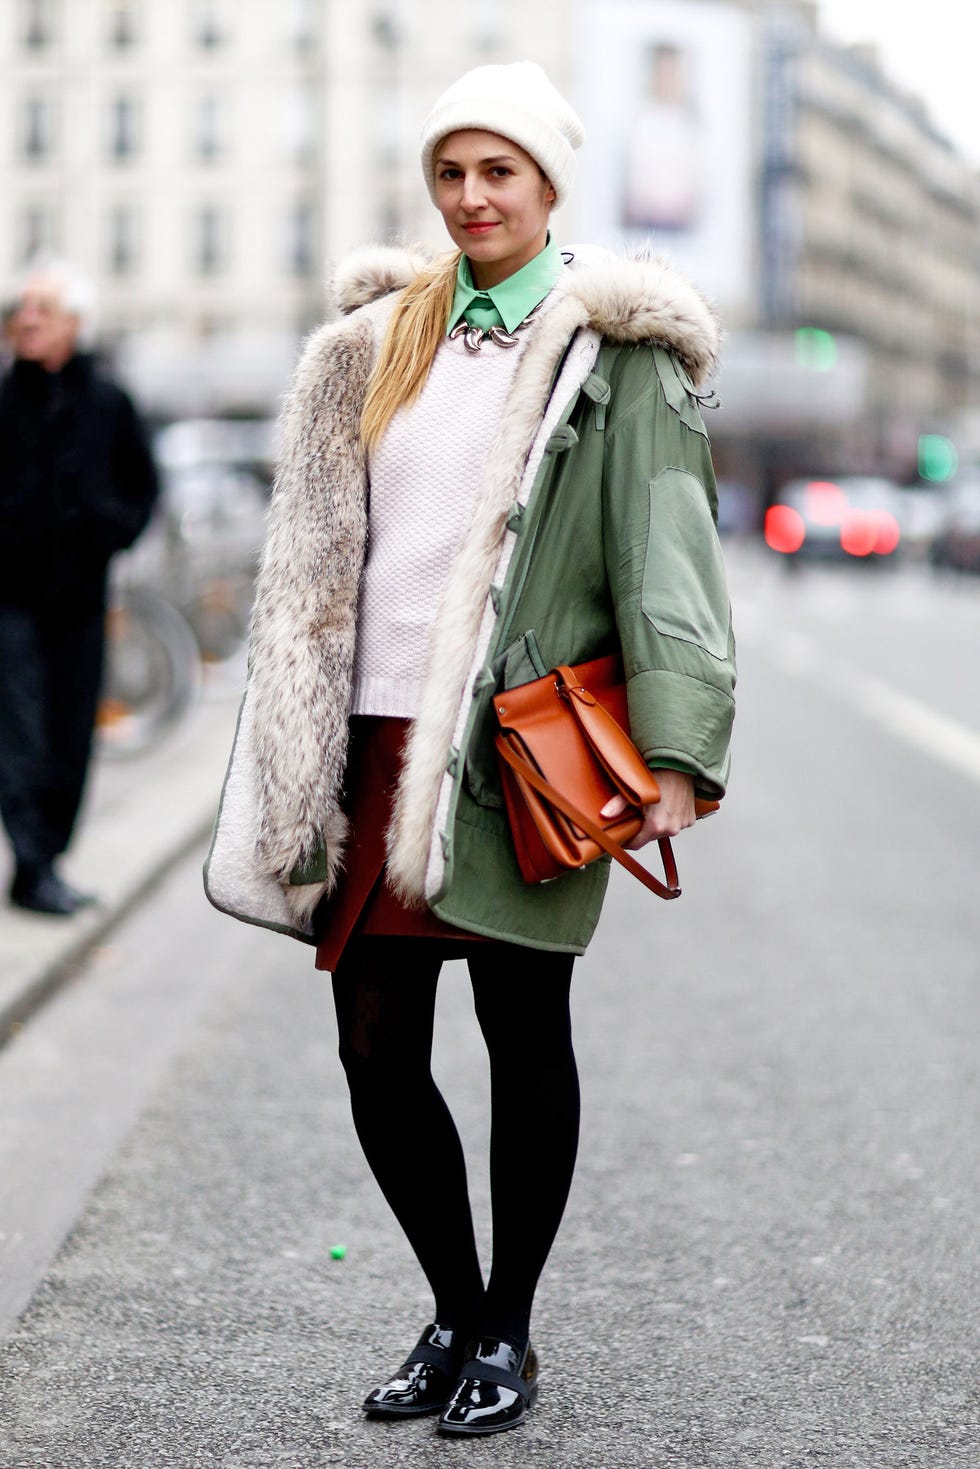 Leg, Textile, Winter, Outerwear, Bag, Street, Street fashion, Style, Jacket, Fashion, 